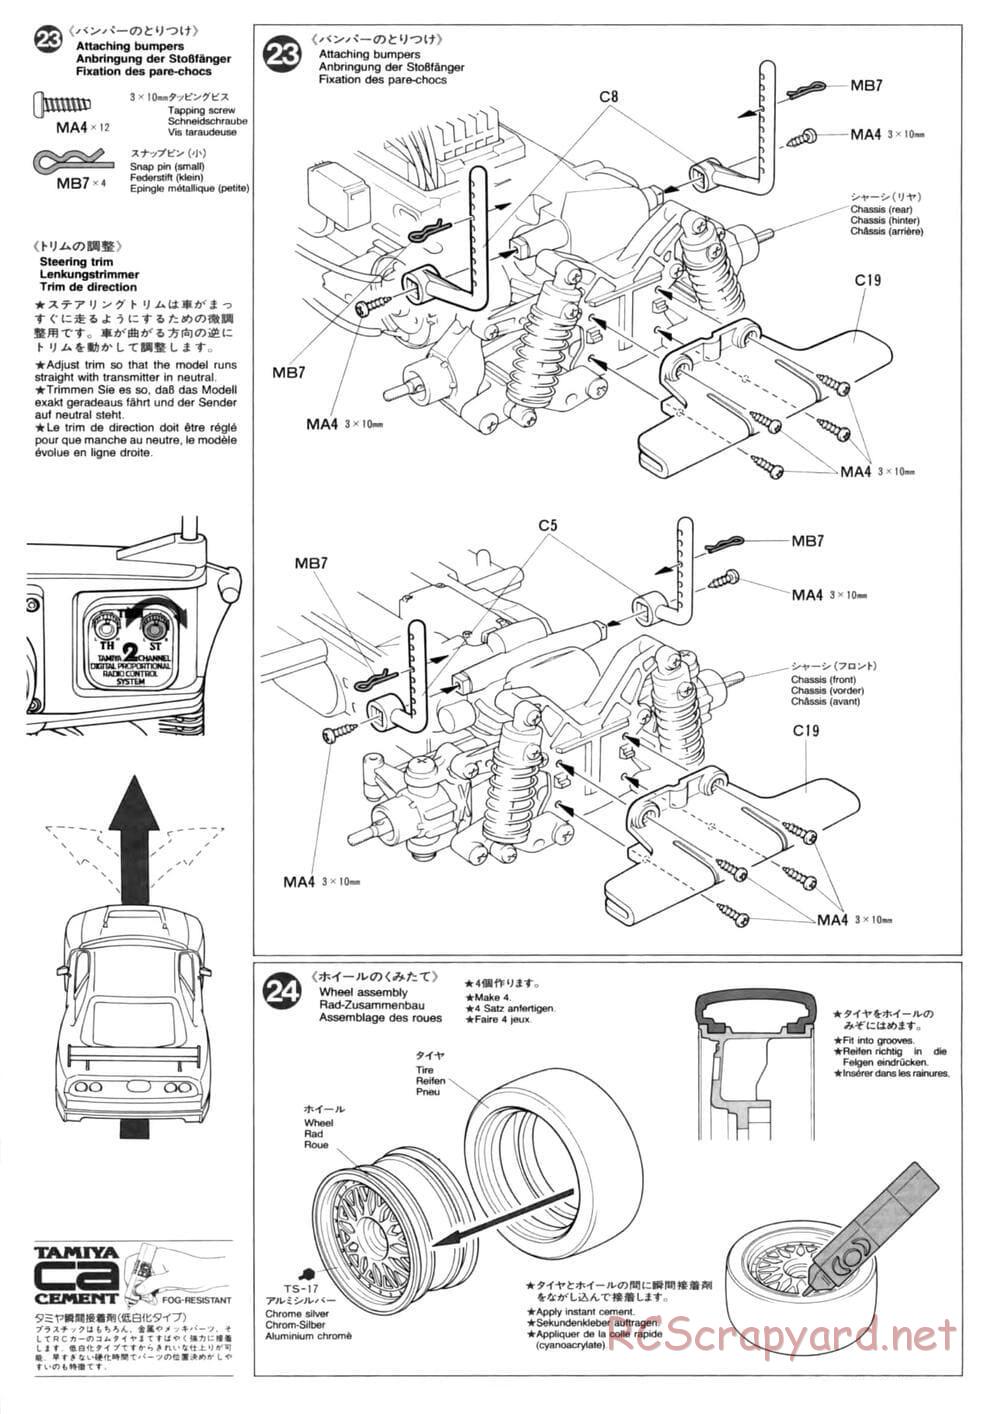 Tamiya - TL-01 Chassis - Manual - Page 14